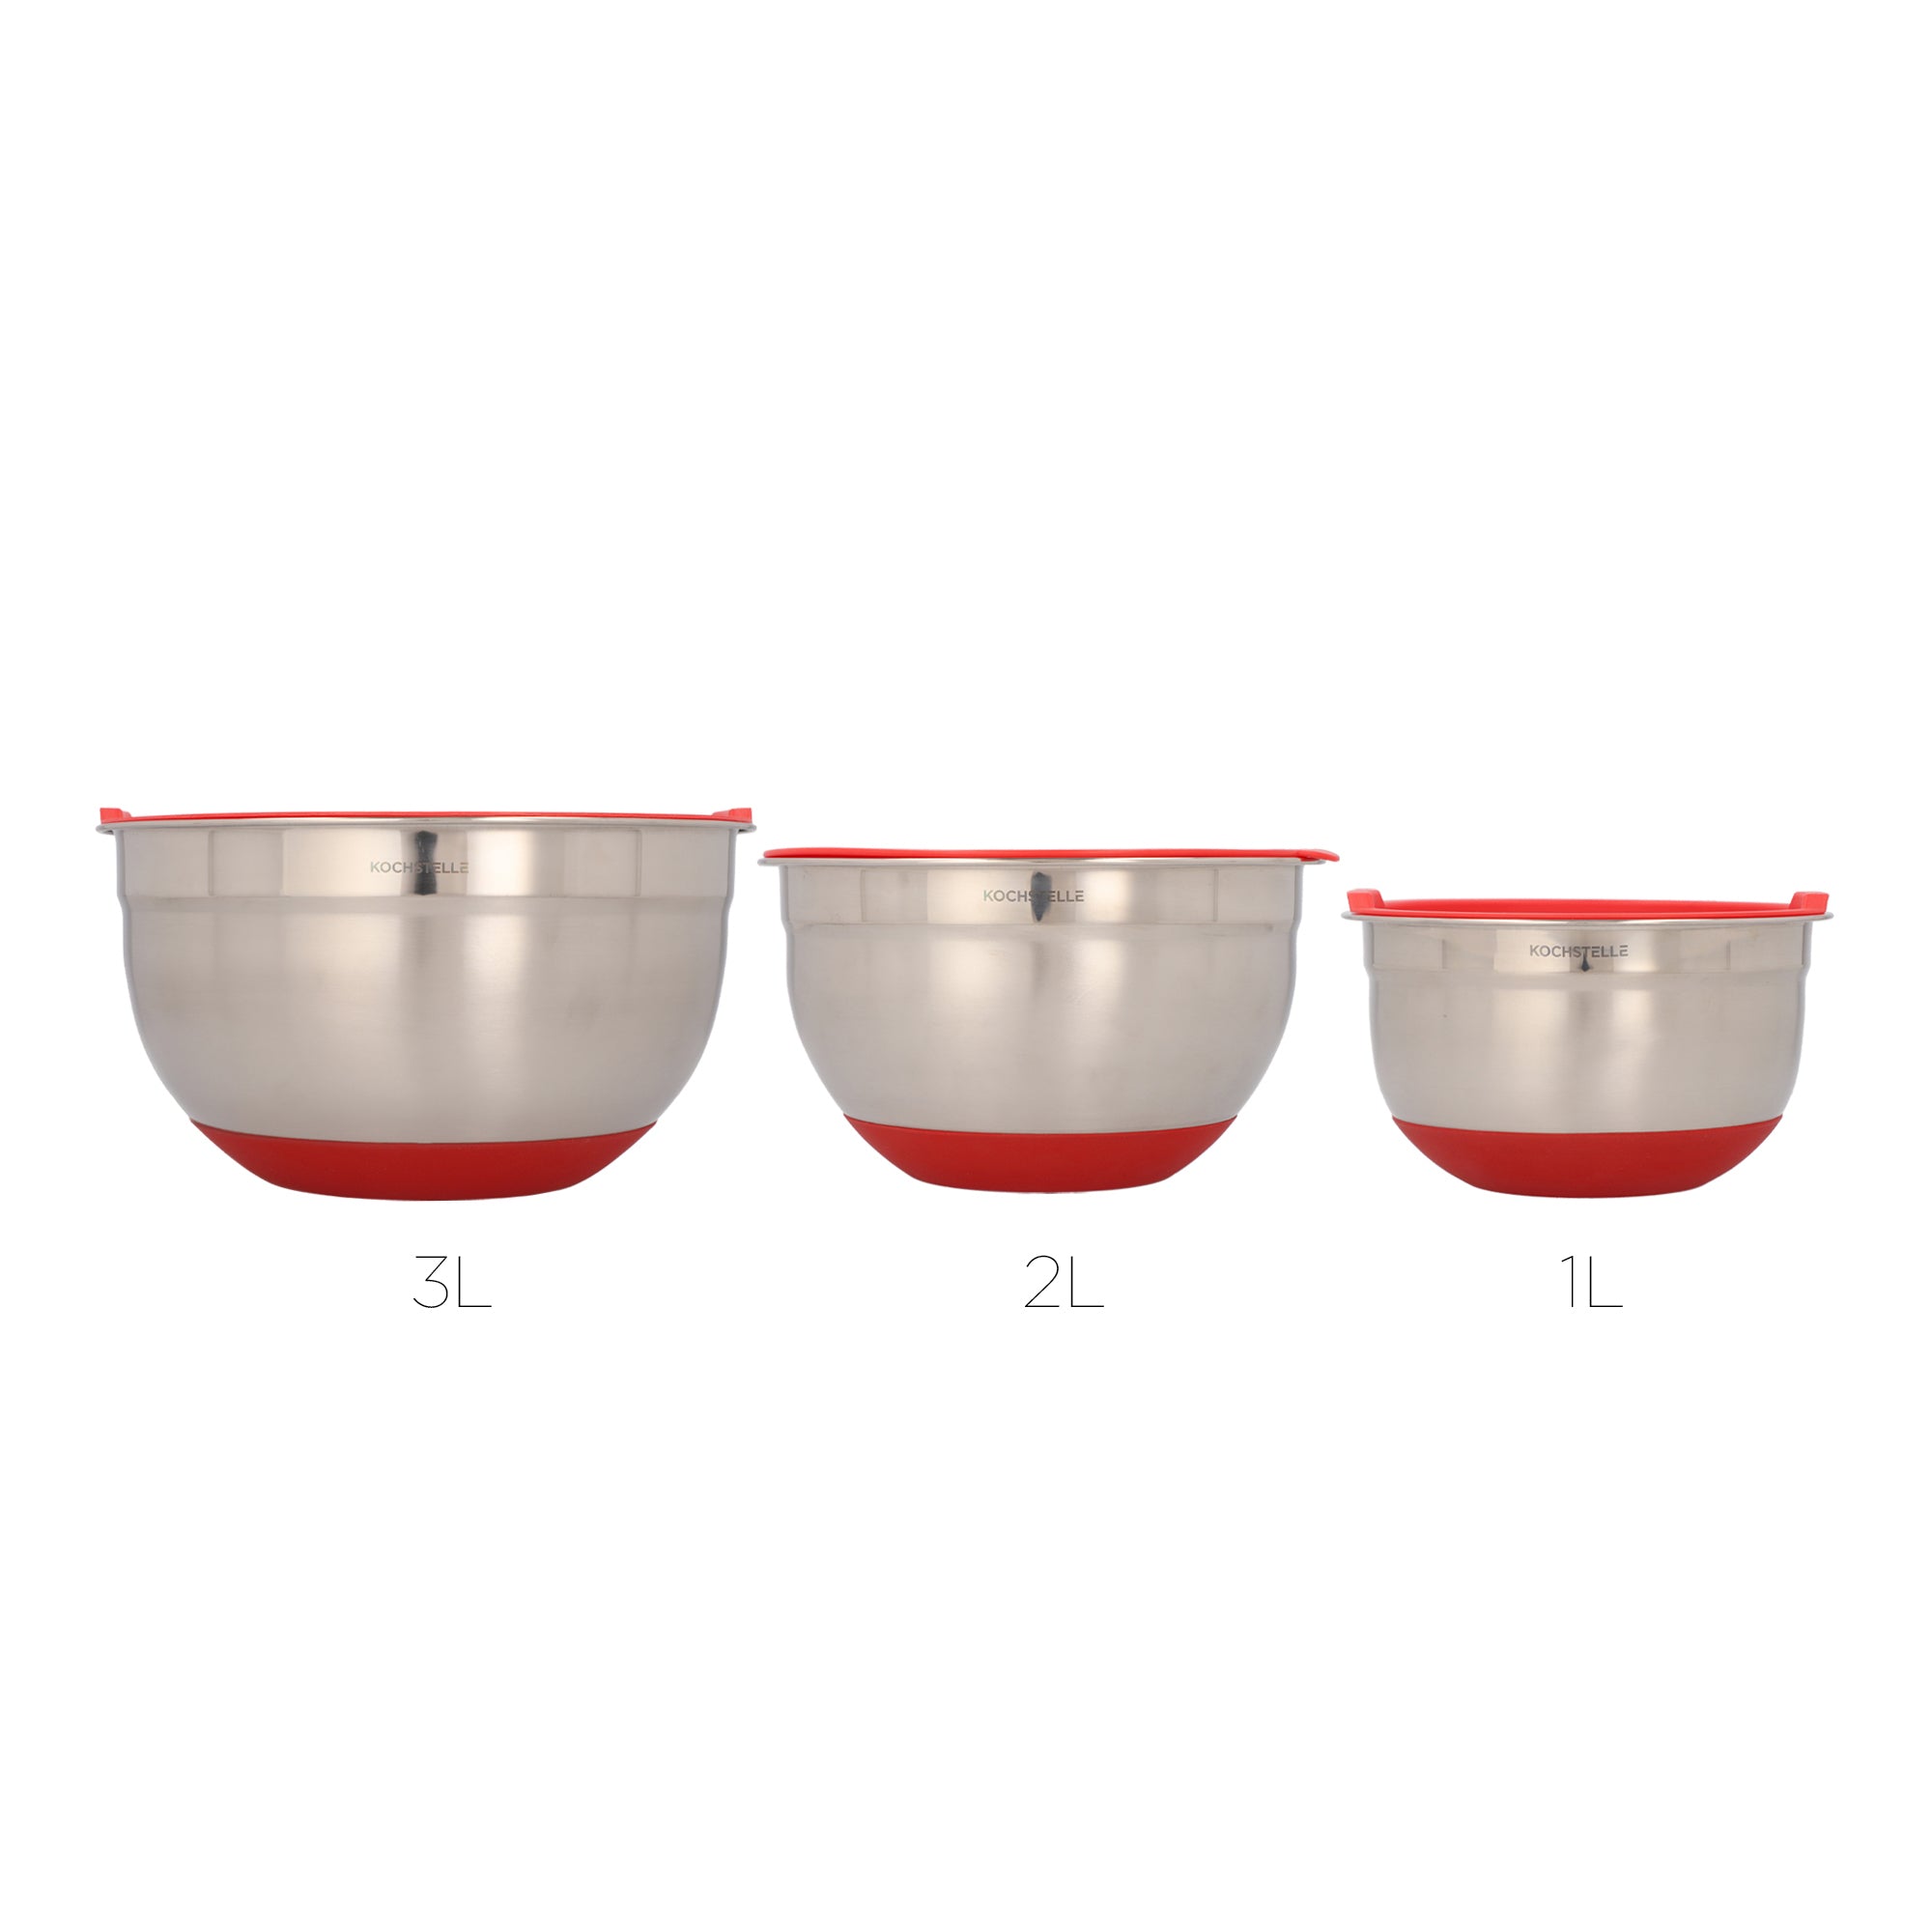 Bowls mezcladores de acero inoxidable con silicon color rojo + 3 ralladores 9 piezas.